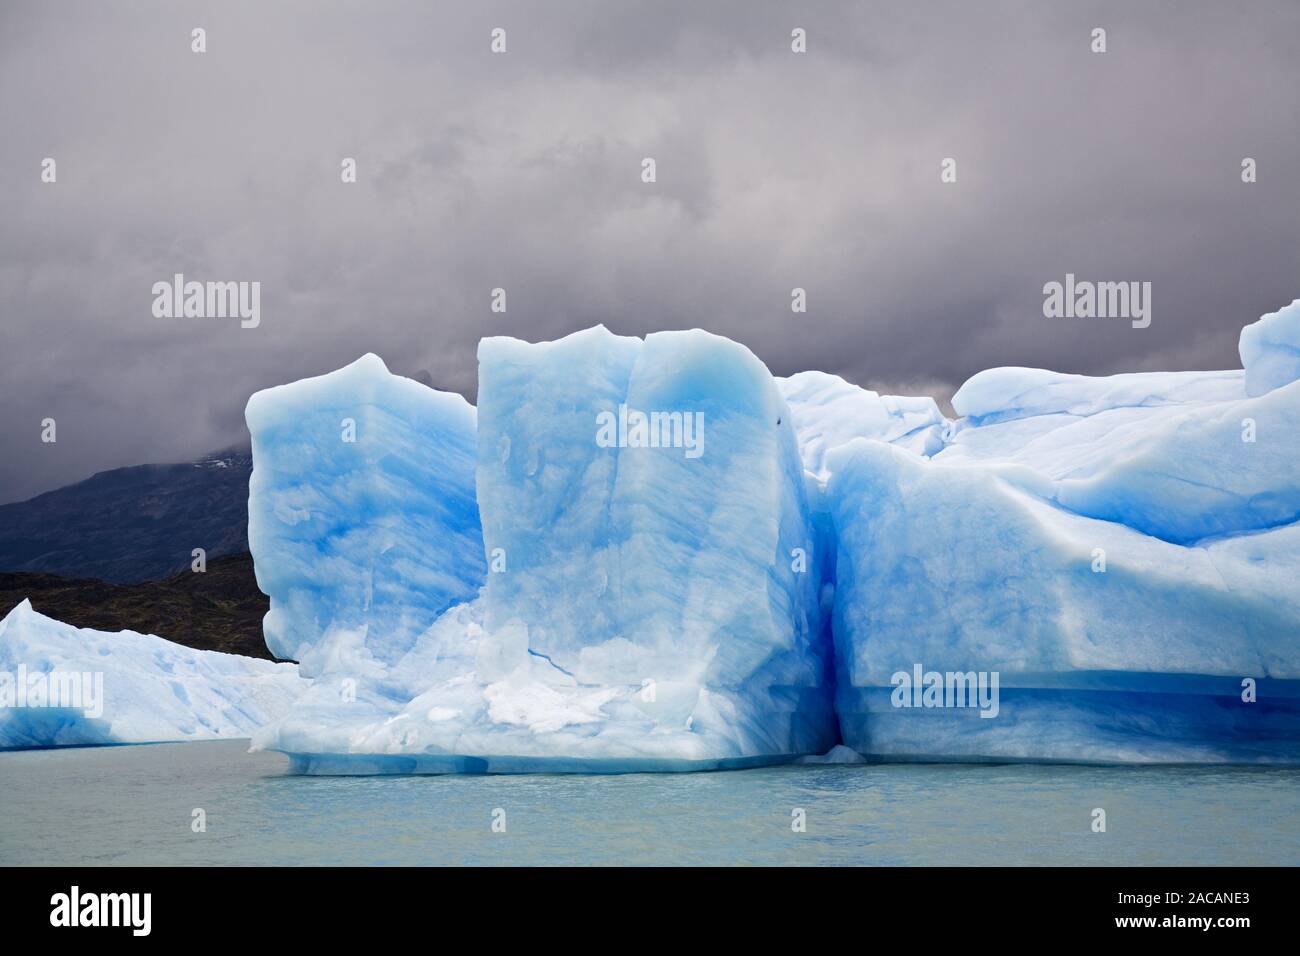 Icebergs at Spegazzini Glacier at lake Lago Argentino, Argentina Stock Photo